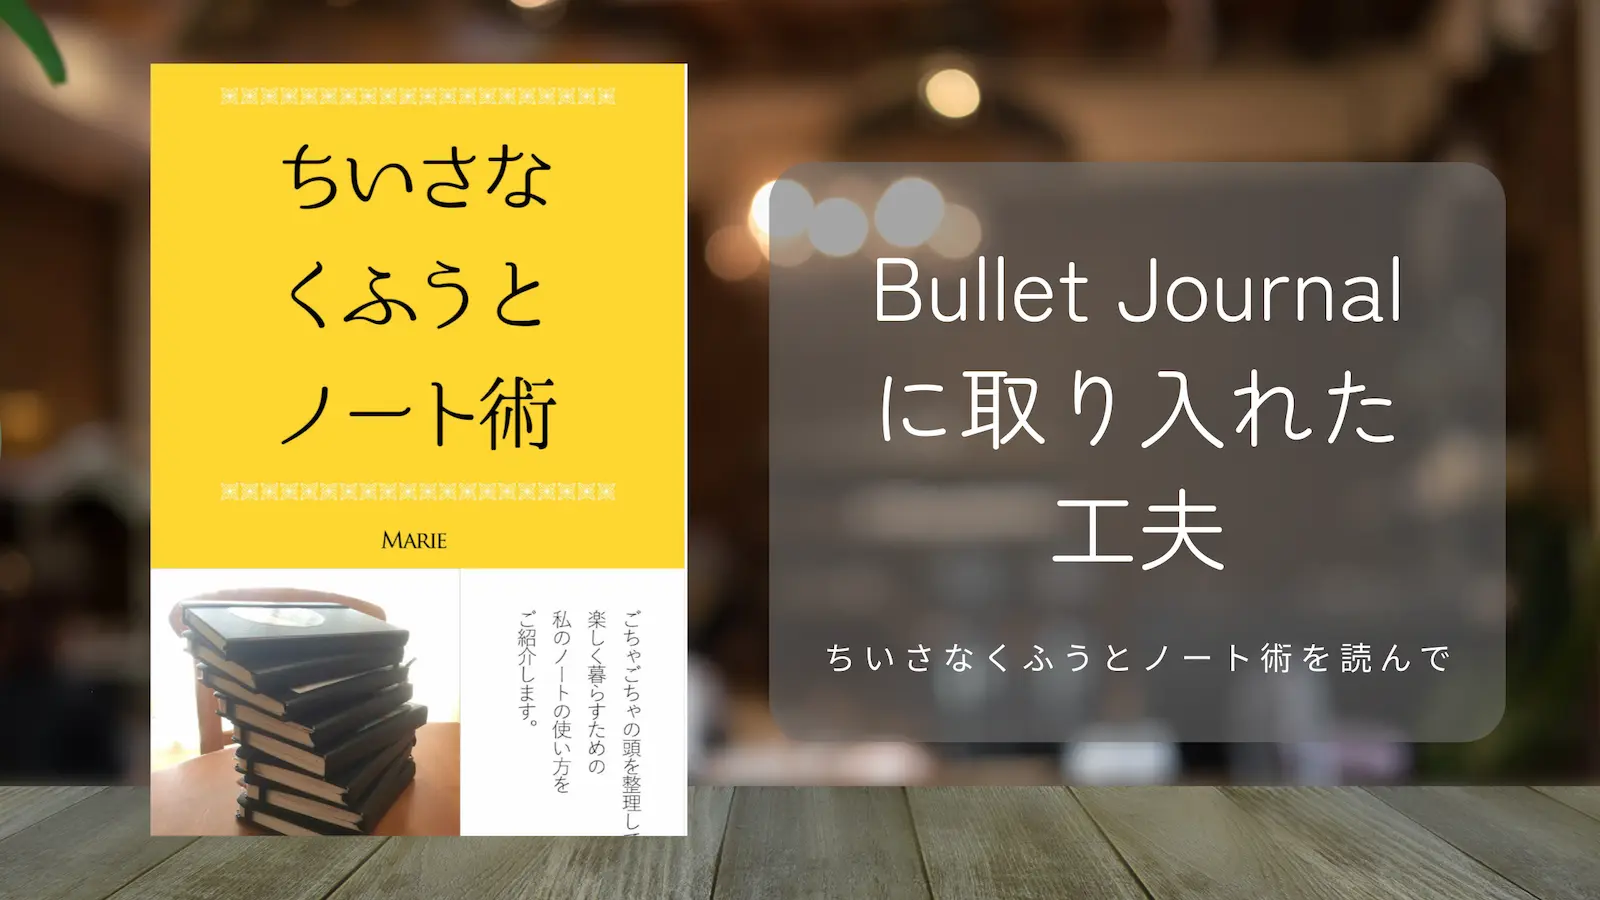 【BulletJournal】「ちいさなくふうとノート術」から取り入れたい工夫